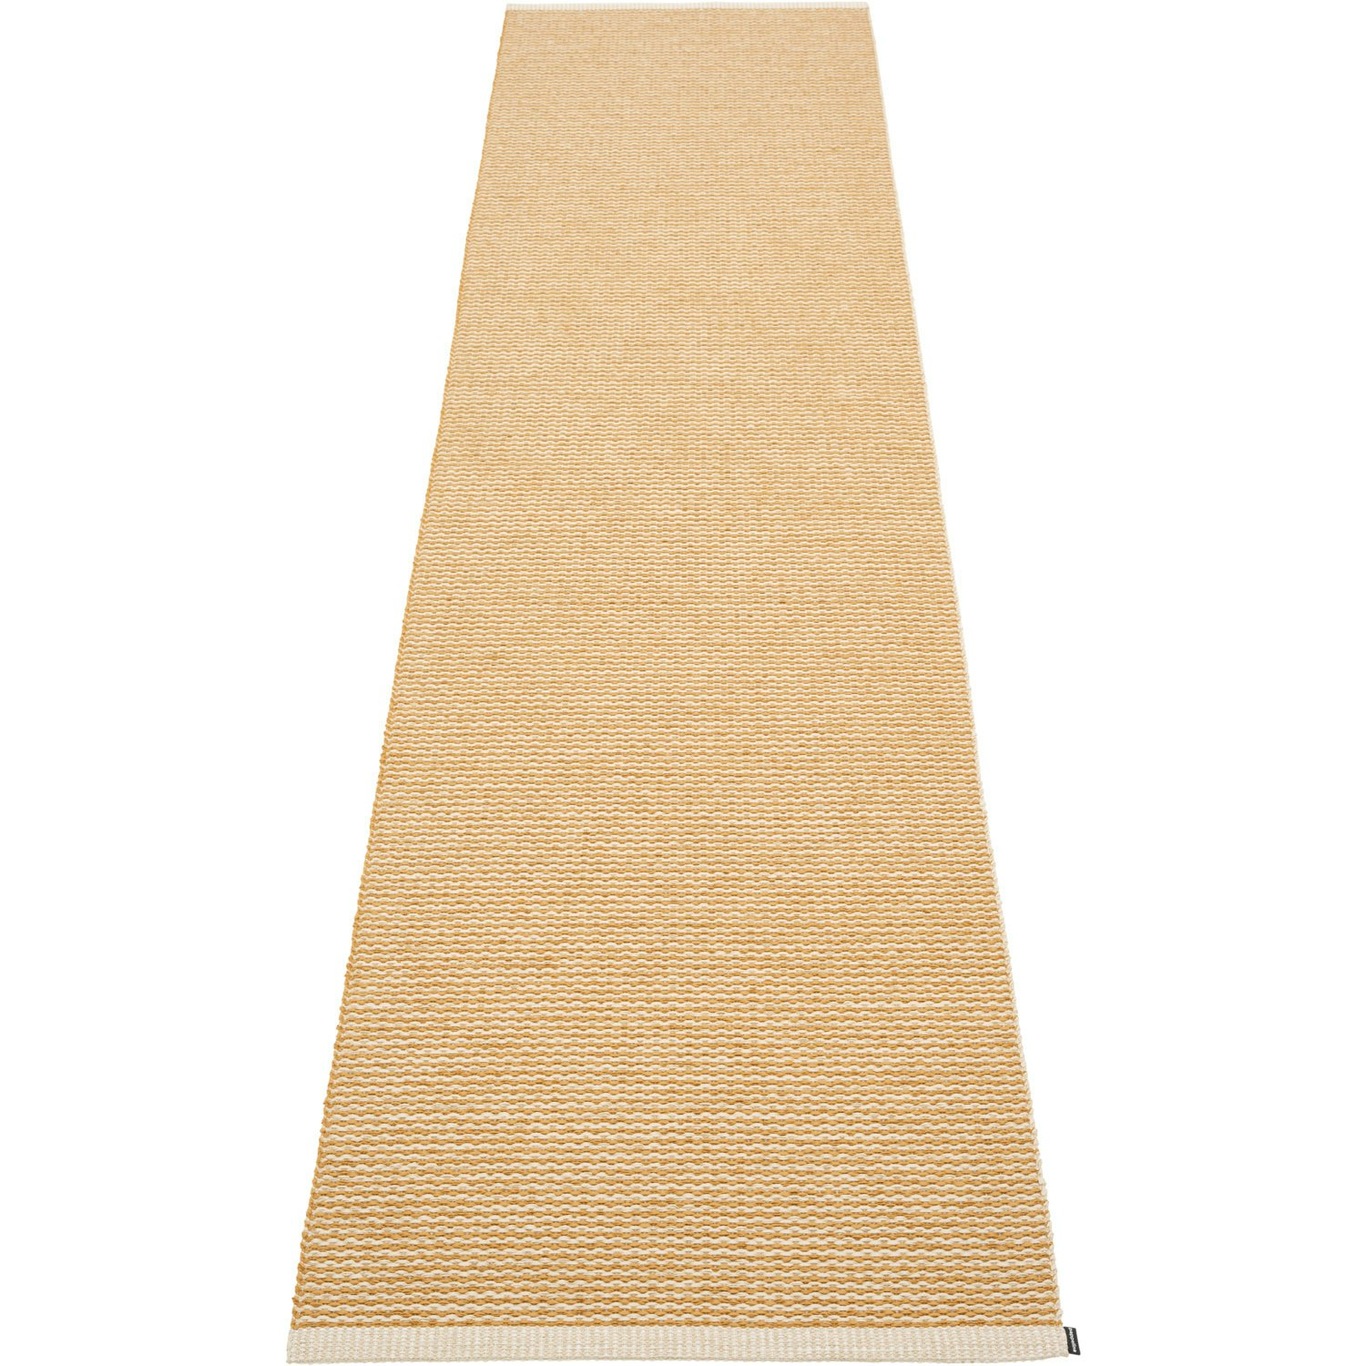 Mono Teppich Ocker/Cremefarben, 70x300 cm